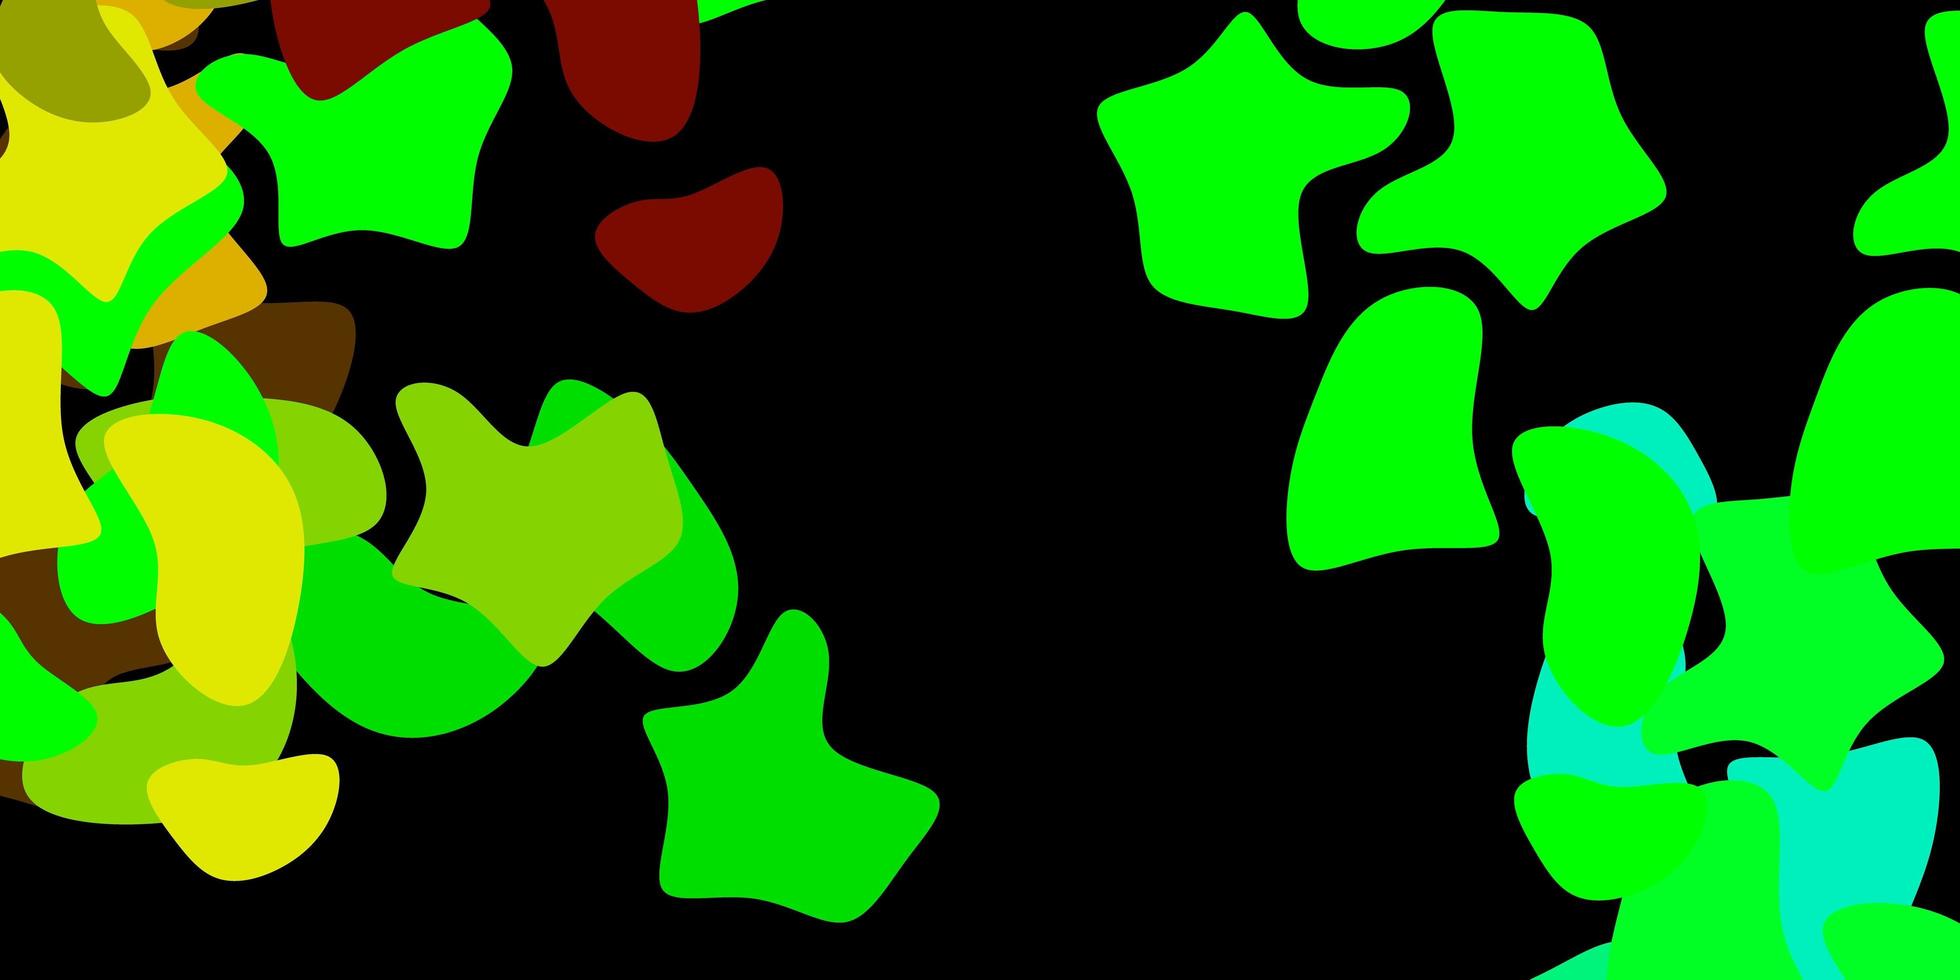 Dark multicolor vector background with random forms.